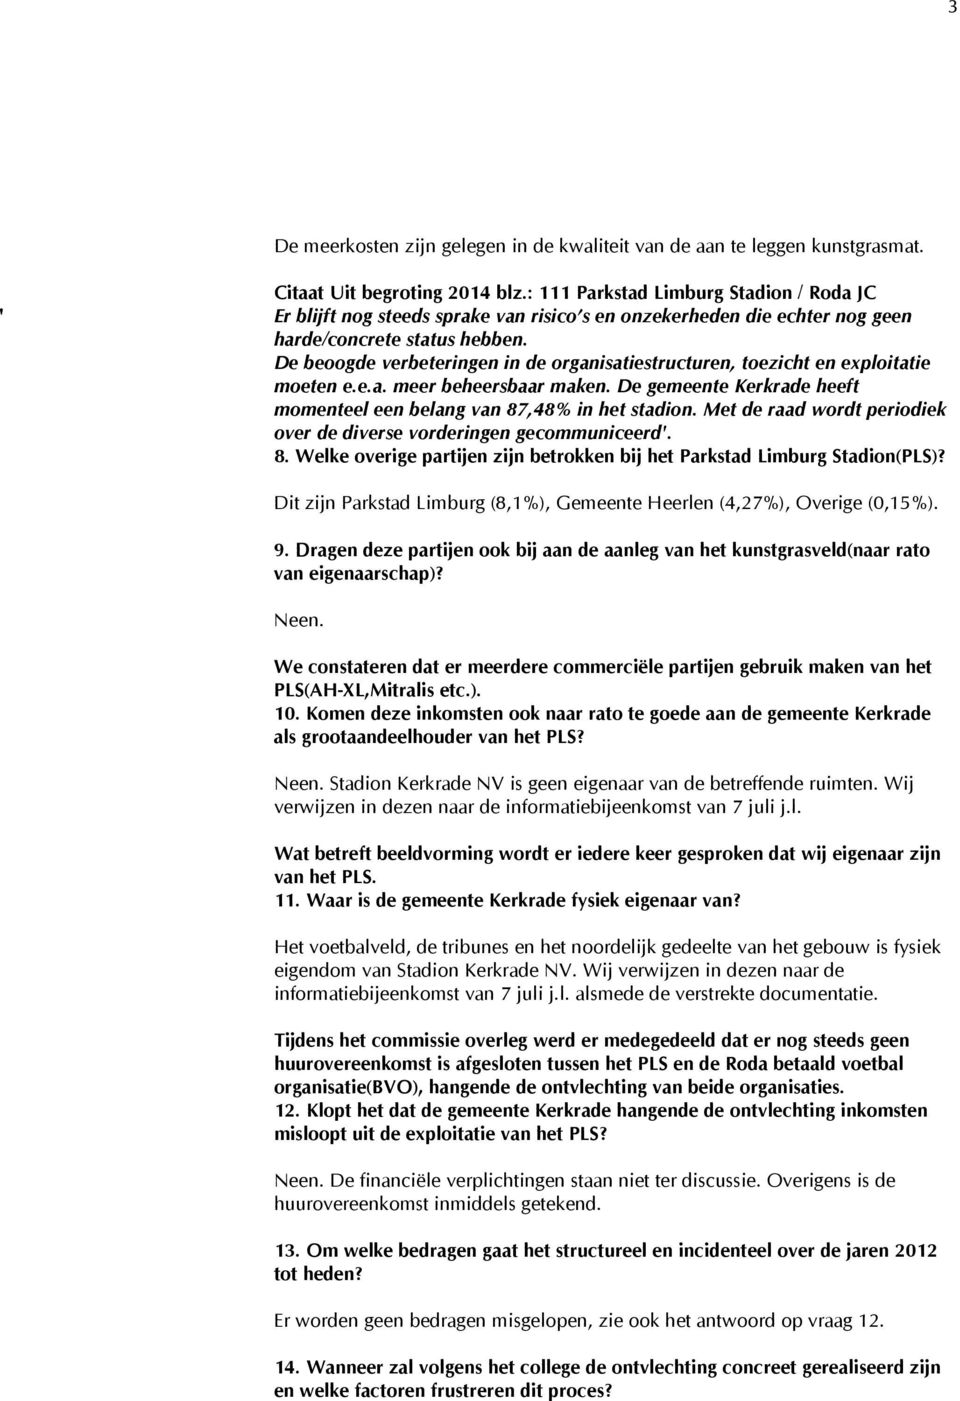 De beoogde verbeteringen in de organisatiestructuren, toezicht en exploitatie moeten e.e.a. meer beheersbaar maken. De gemeente Kerkrade heeft momenteel een belang van 87,48% in het stadion.